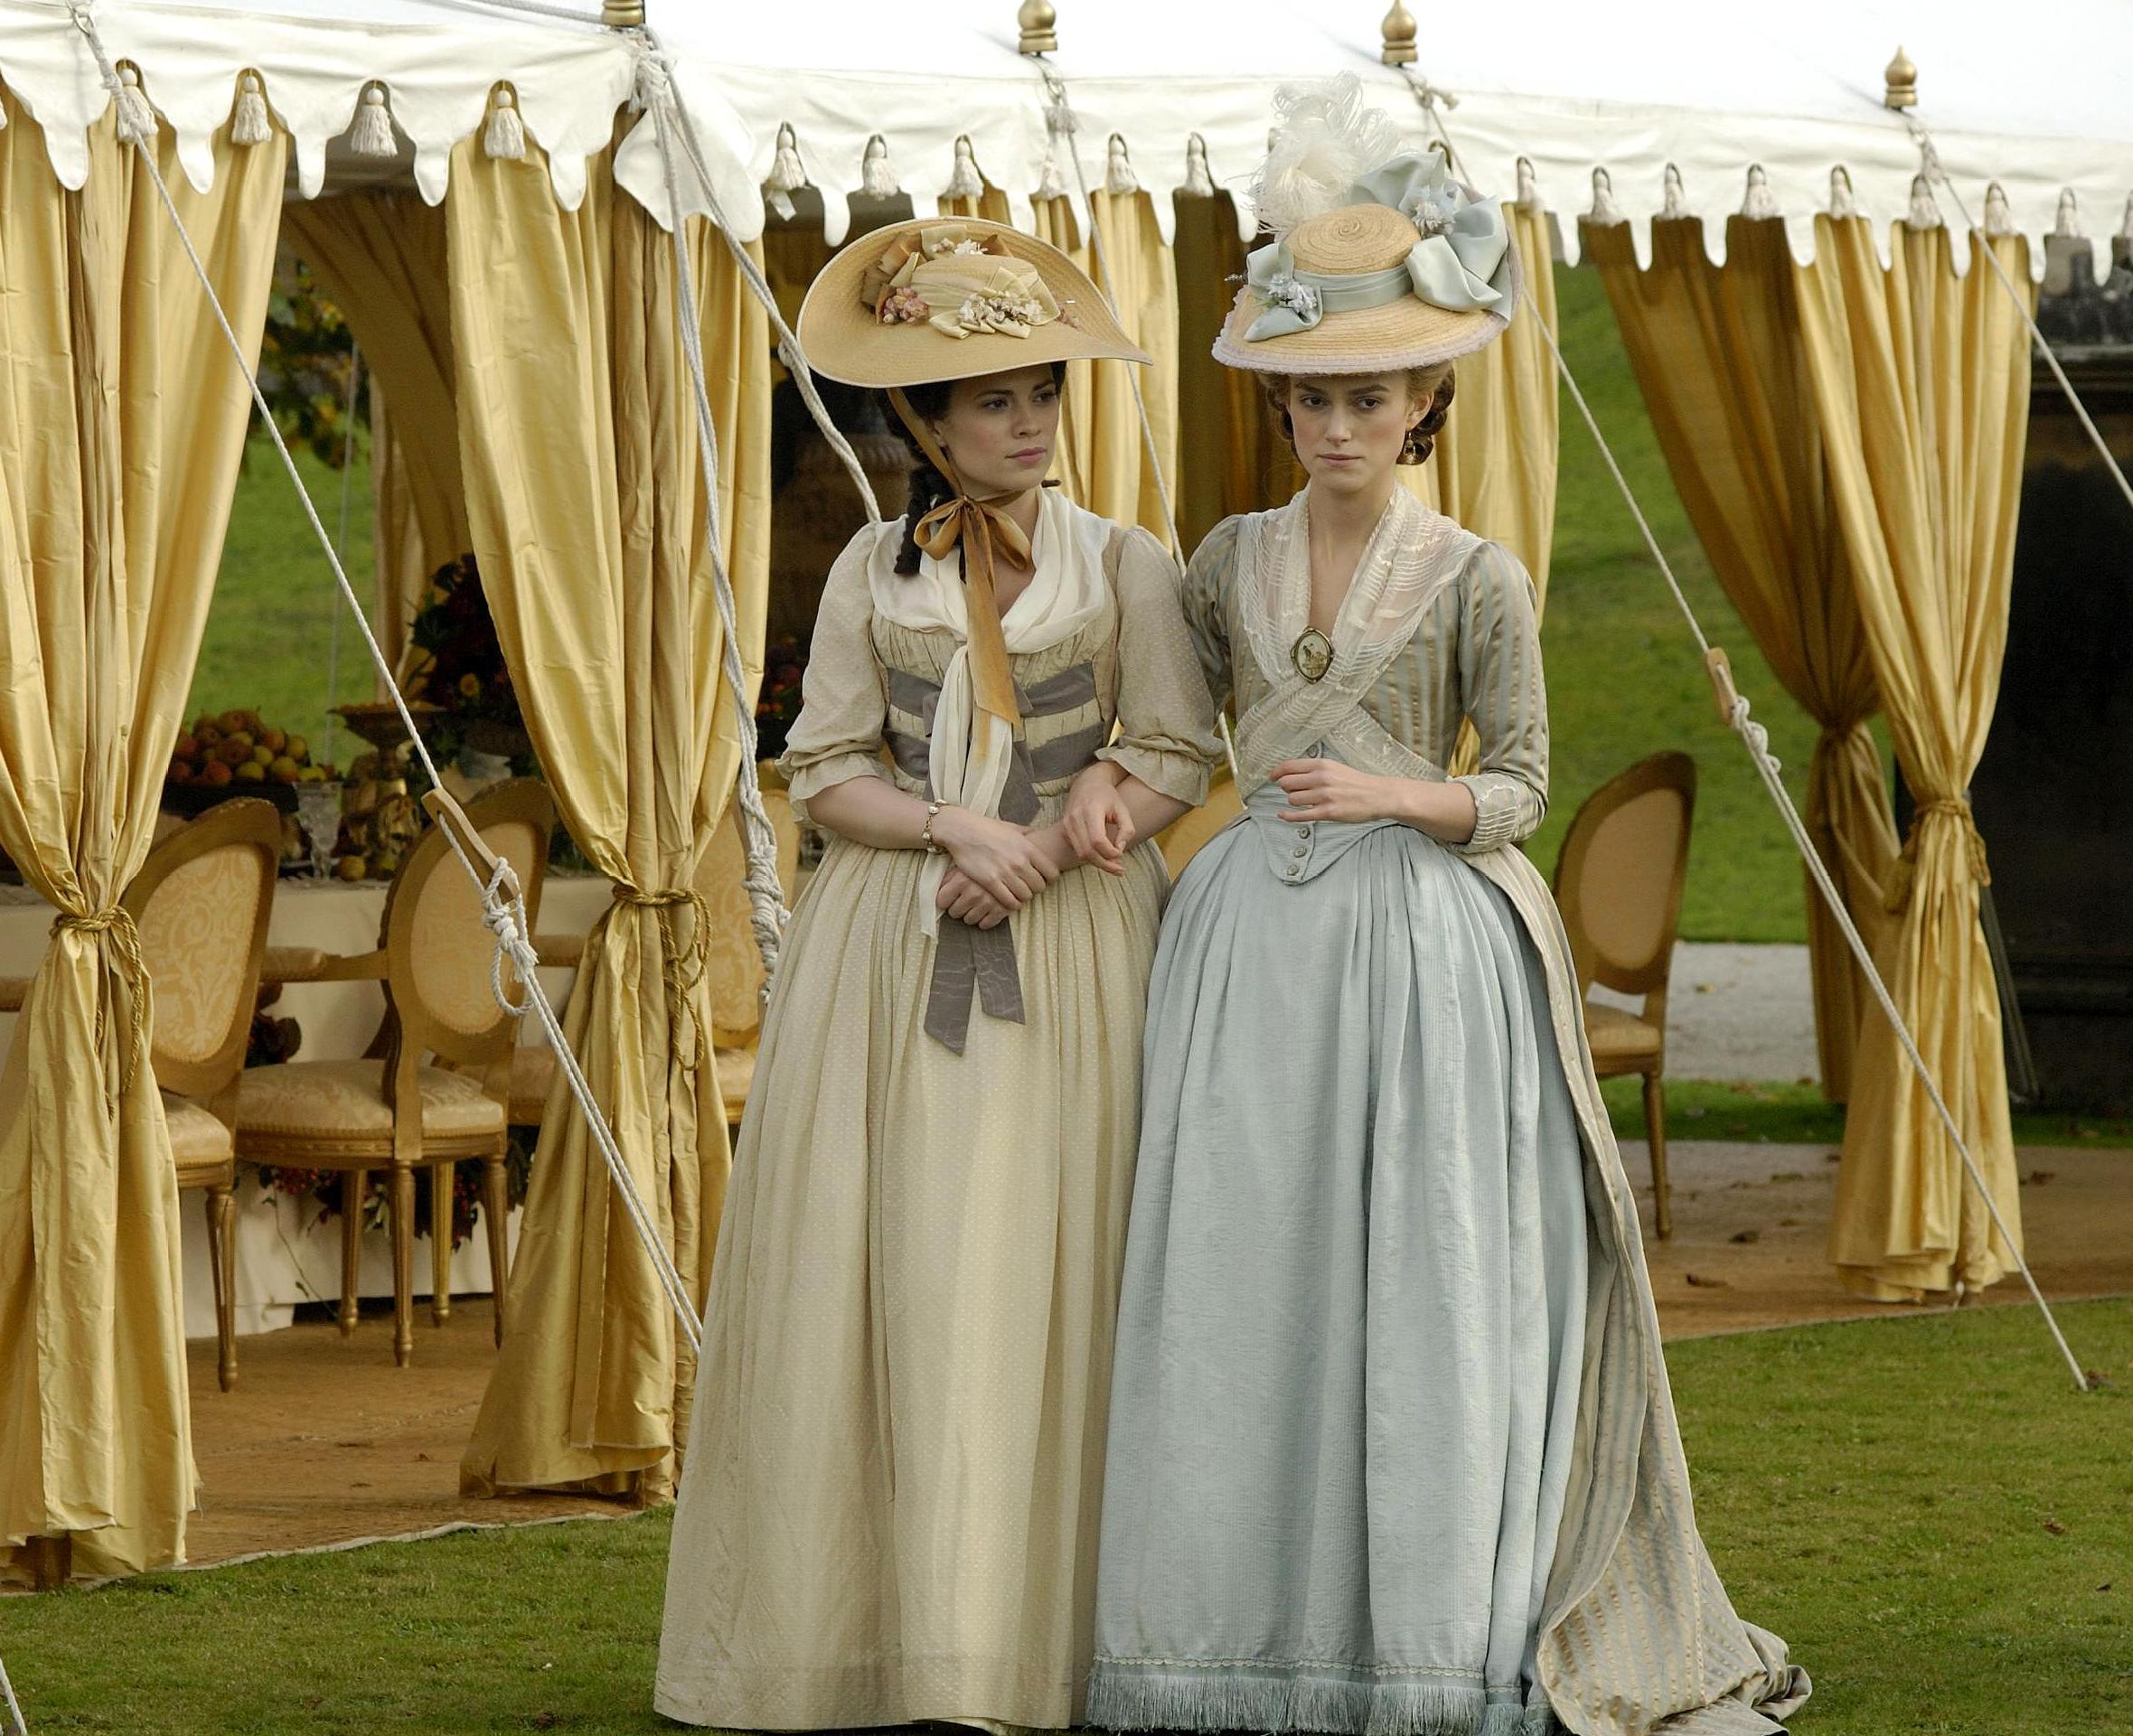 《公爵夫人》:浓浓的英国王室风,作为时尚先锋的乔治亚娜,全英国唯一